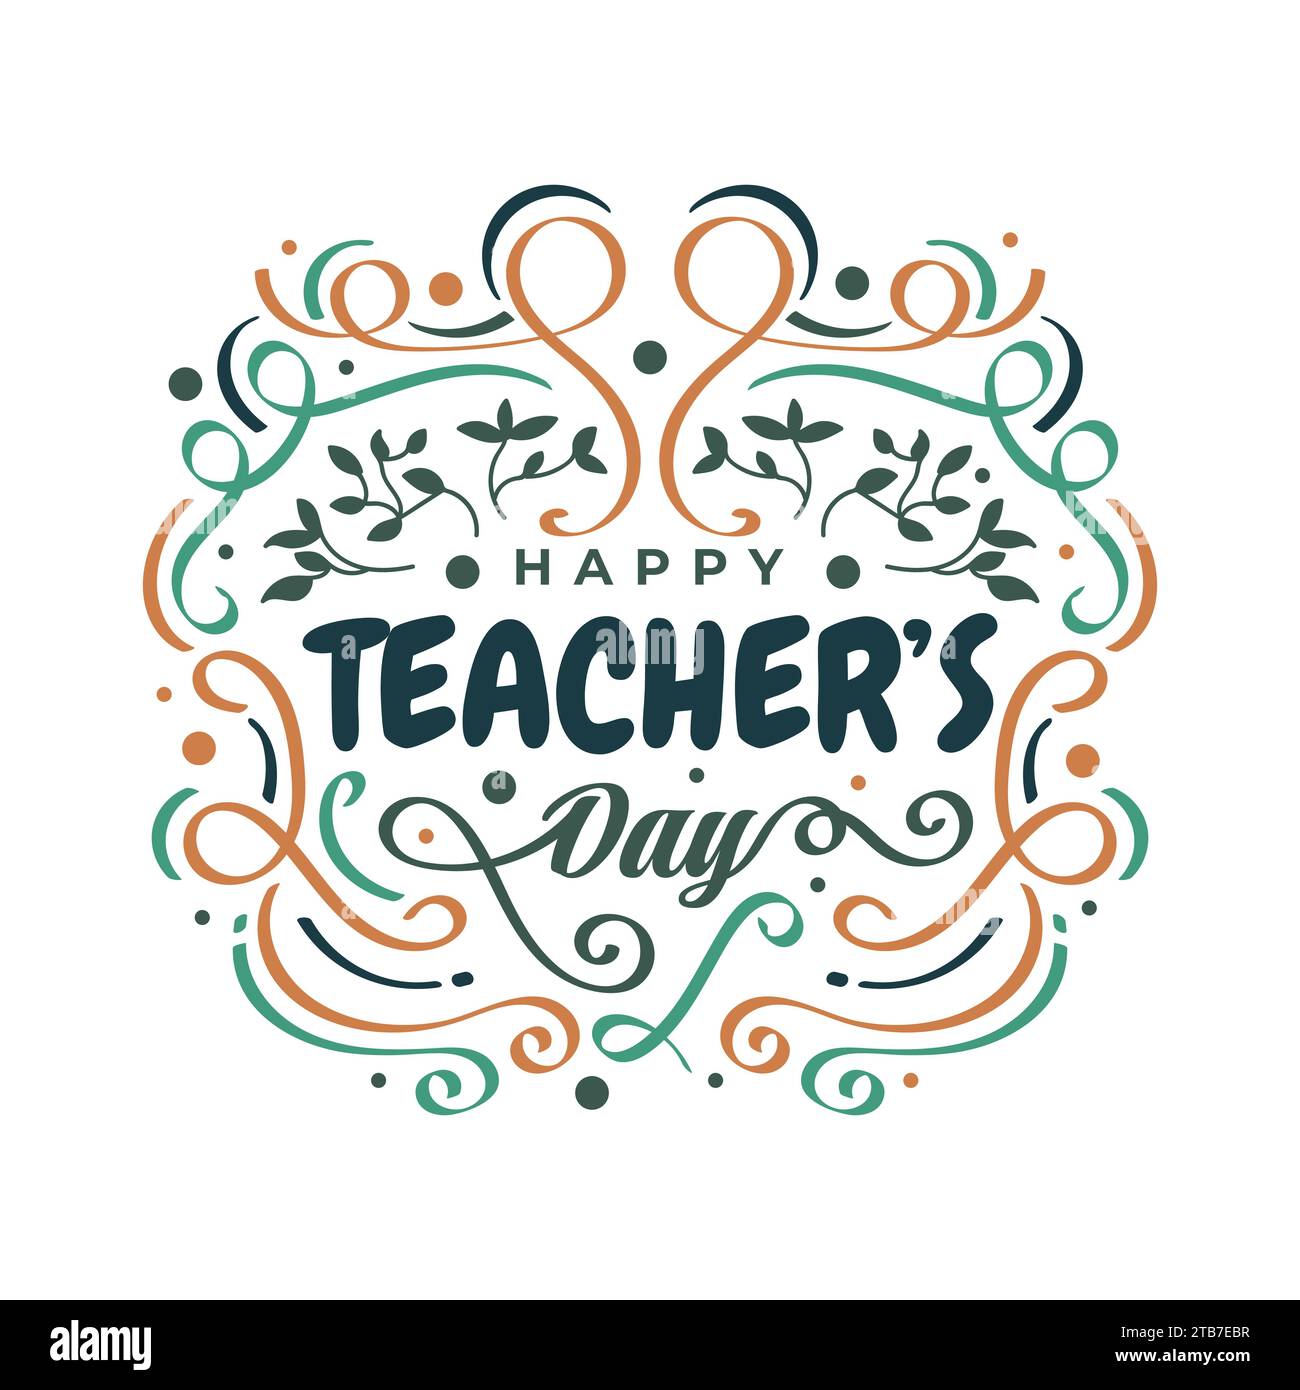  Camisetas para profesoras para mujer, camiseta con texto en  inglés Teach Love Inspire, regalo para el día del profesor, camiseta con  estampado de corazón y amor, camisetas, 1 blanco : Ropa